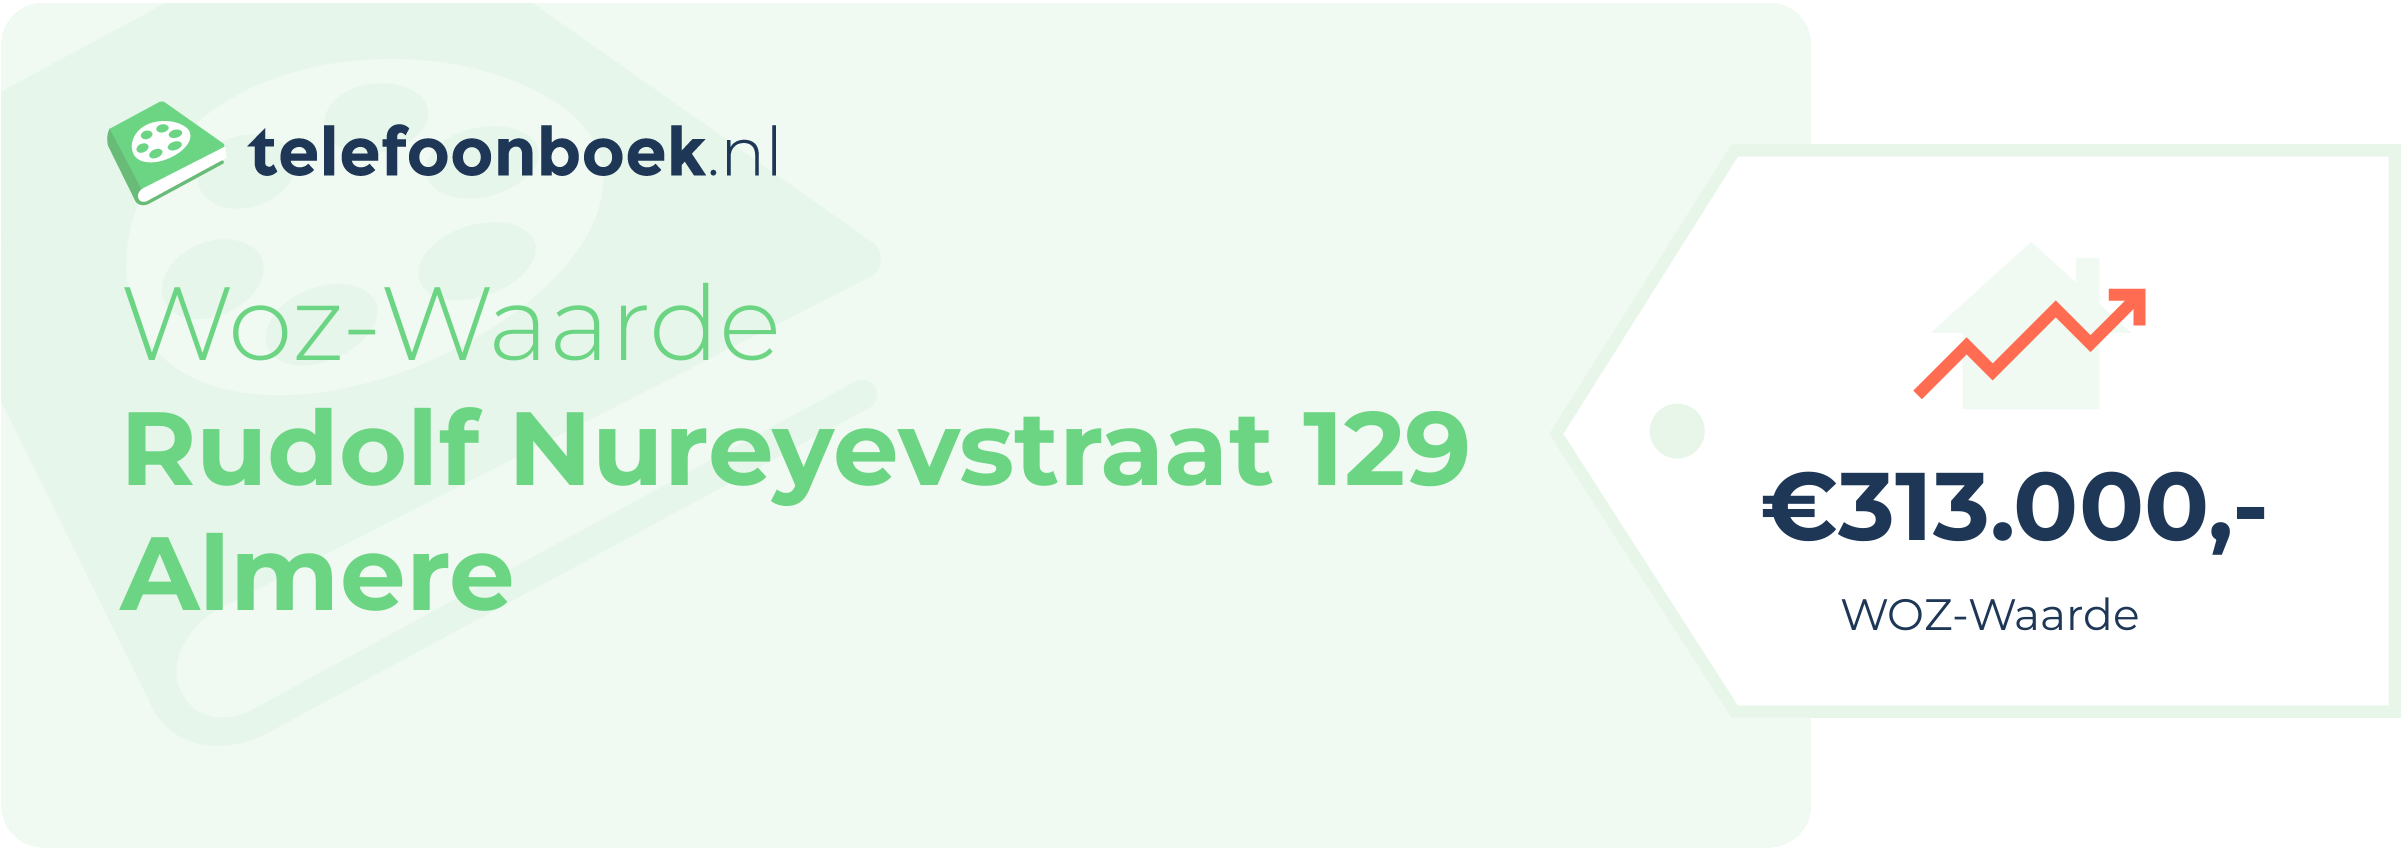 WOZ-waarde Rudolf Nureyevstraat 129 Almere